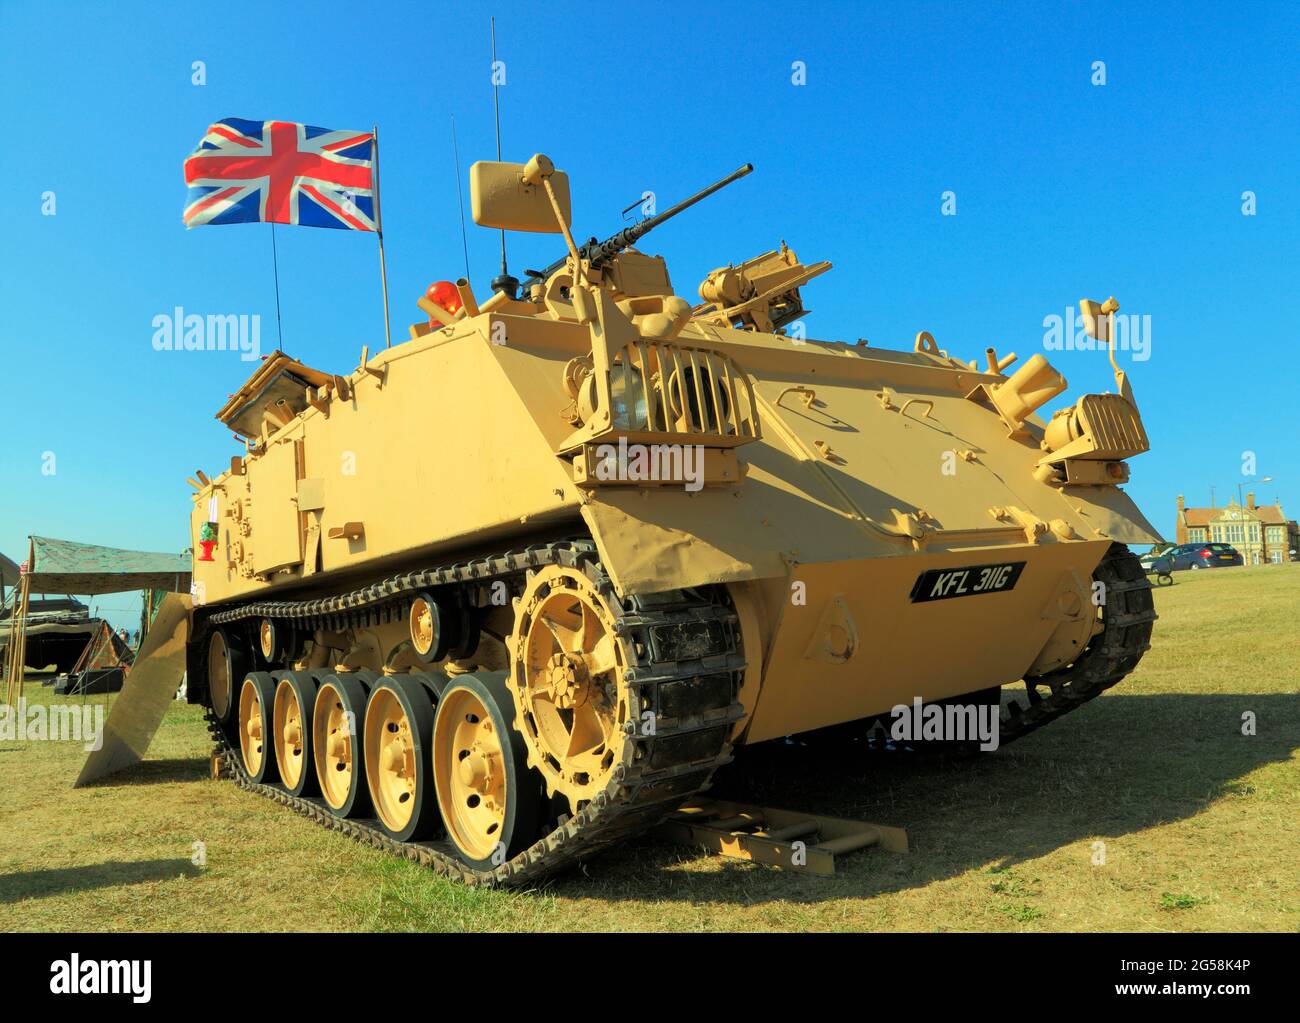 British 432 Tank, véhicule militaire, servi dans la première guerre d'Irak, conflit, véhicules, tanks, drapeau Union Jack Banque D'Images